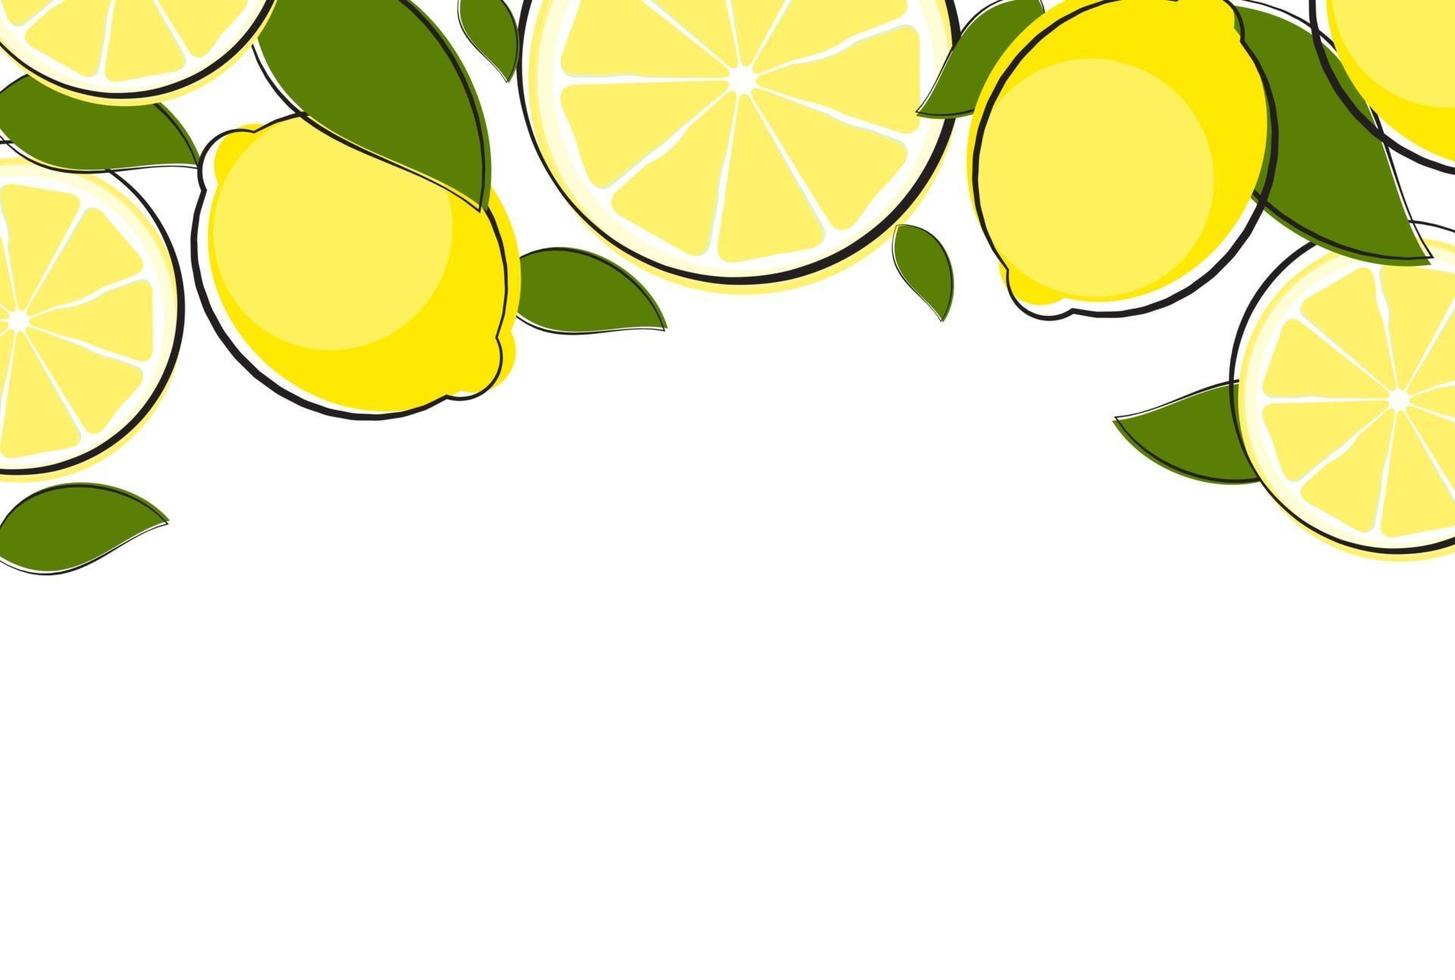 ilustração em vetor fundo natural abstrato limão